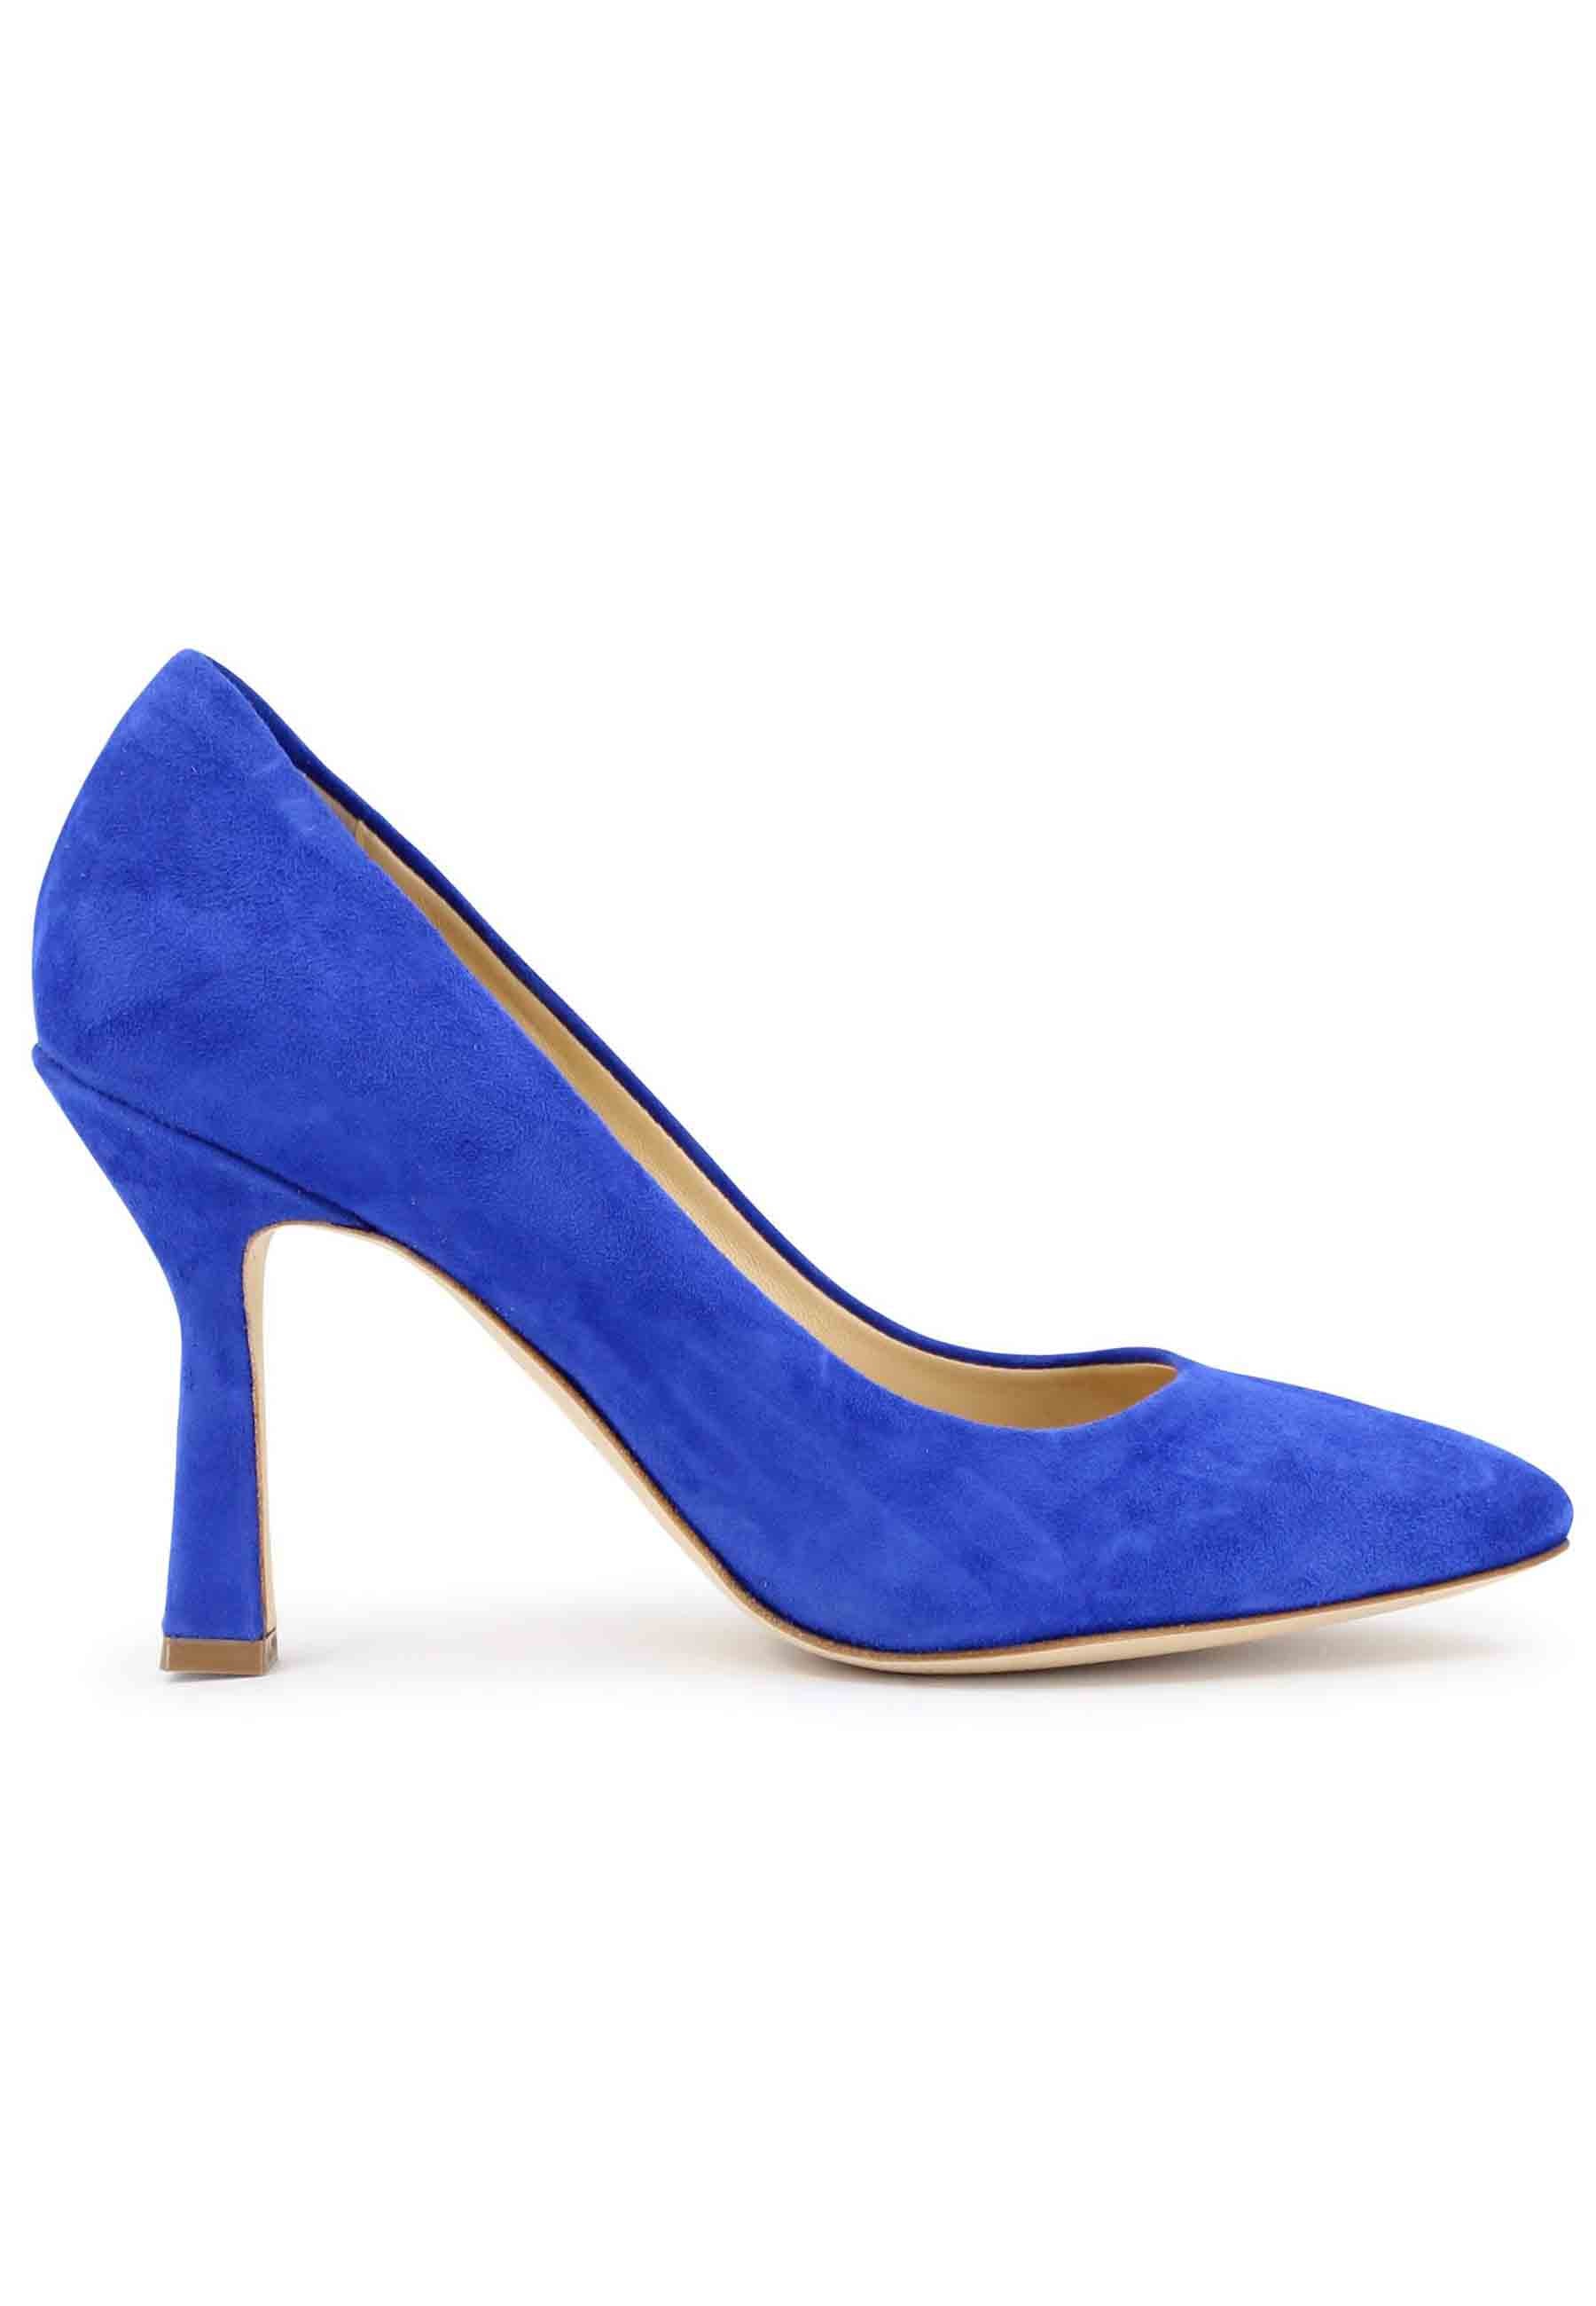 DE1002/RT women's pumps in blue suede with high heel